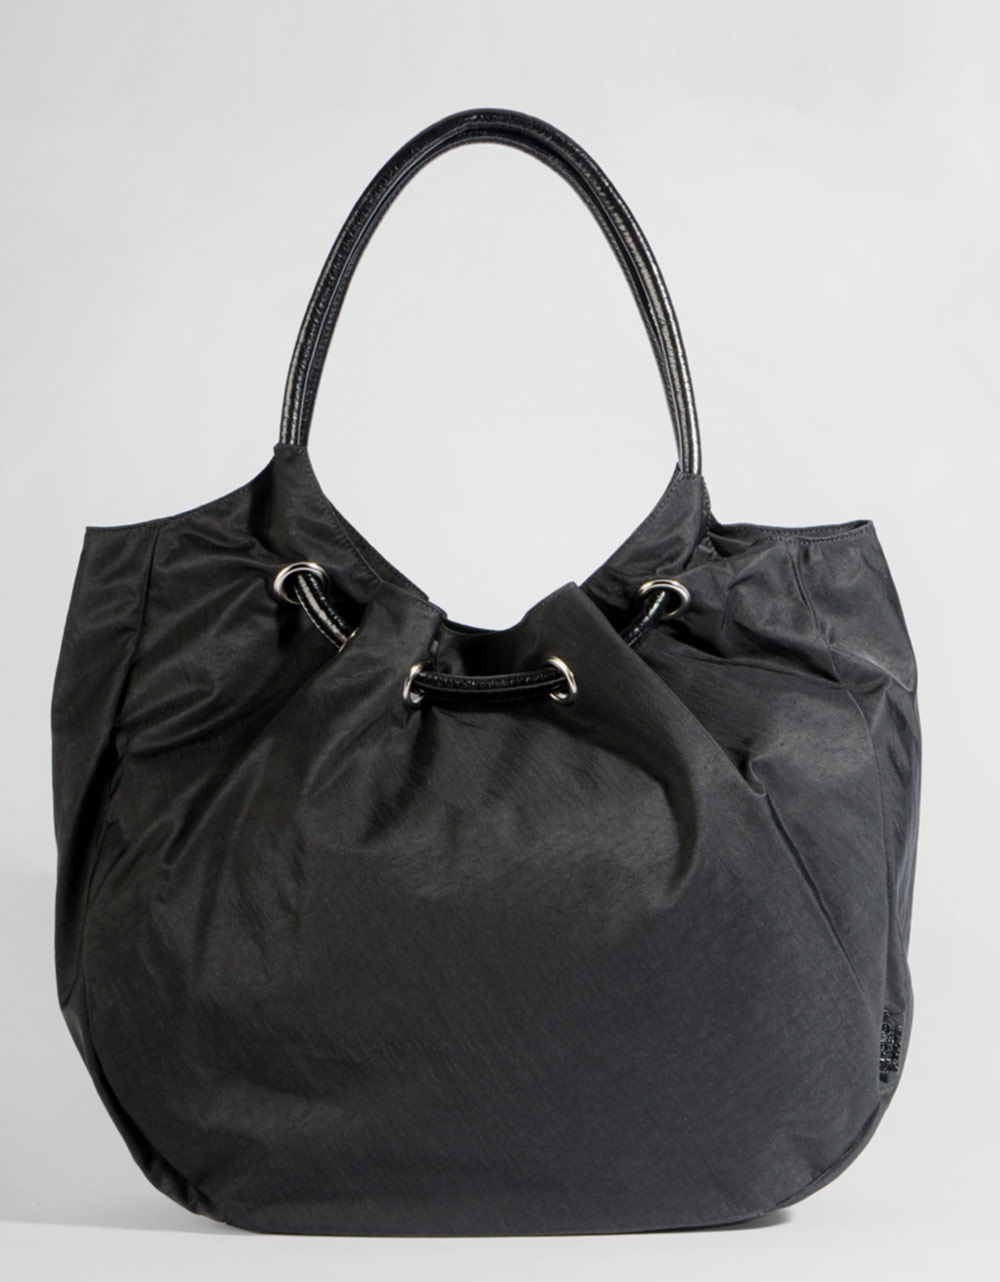 Hobo International Elizabeth Nylon Tote Bag in Black - Lyst